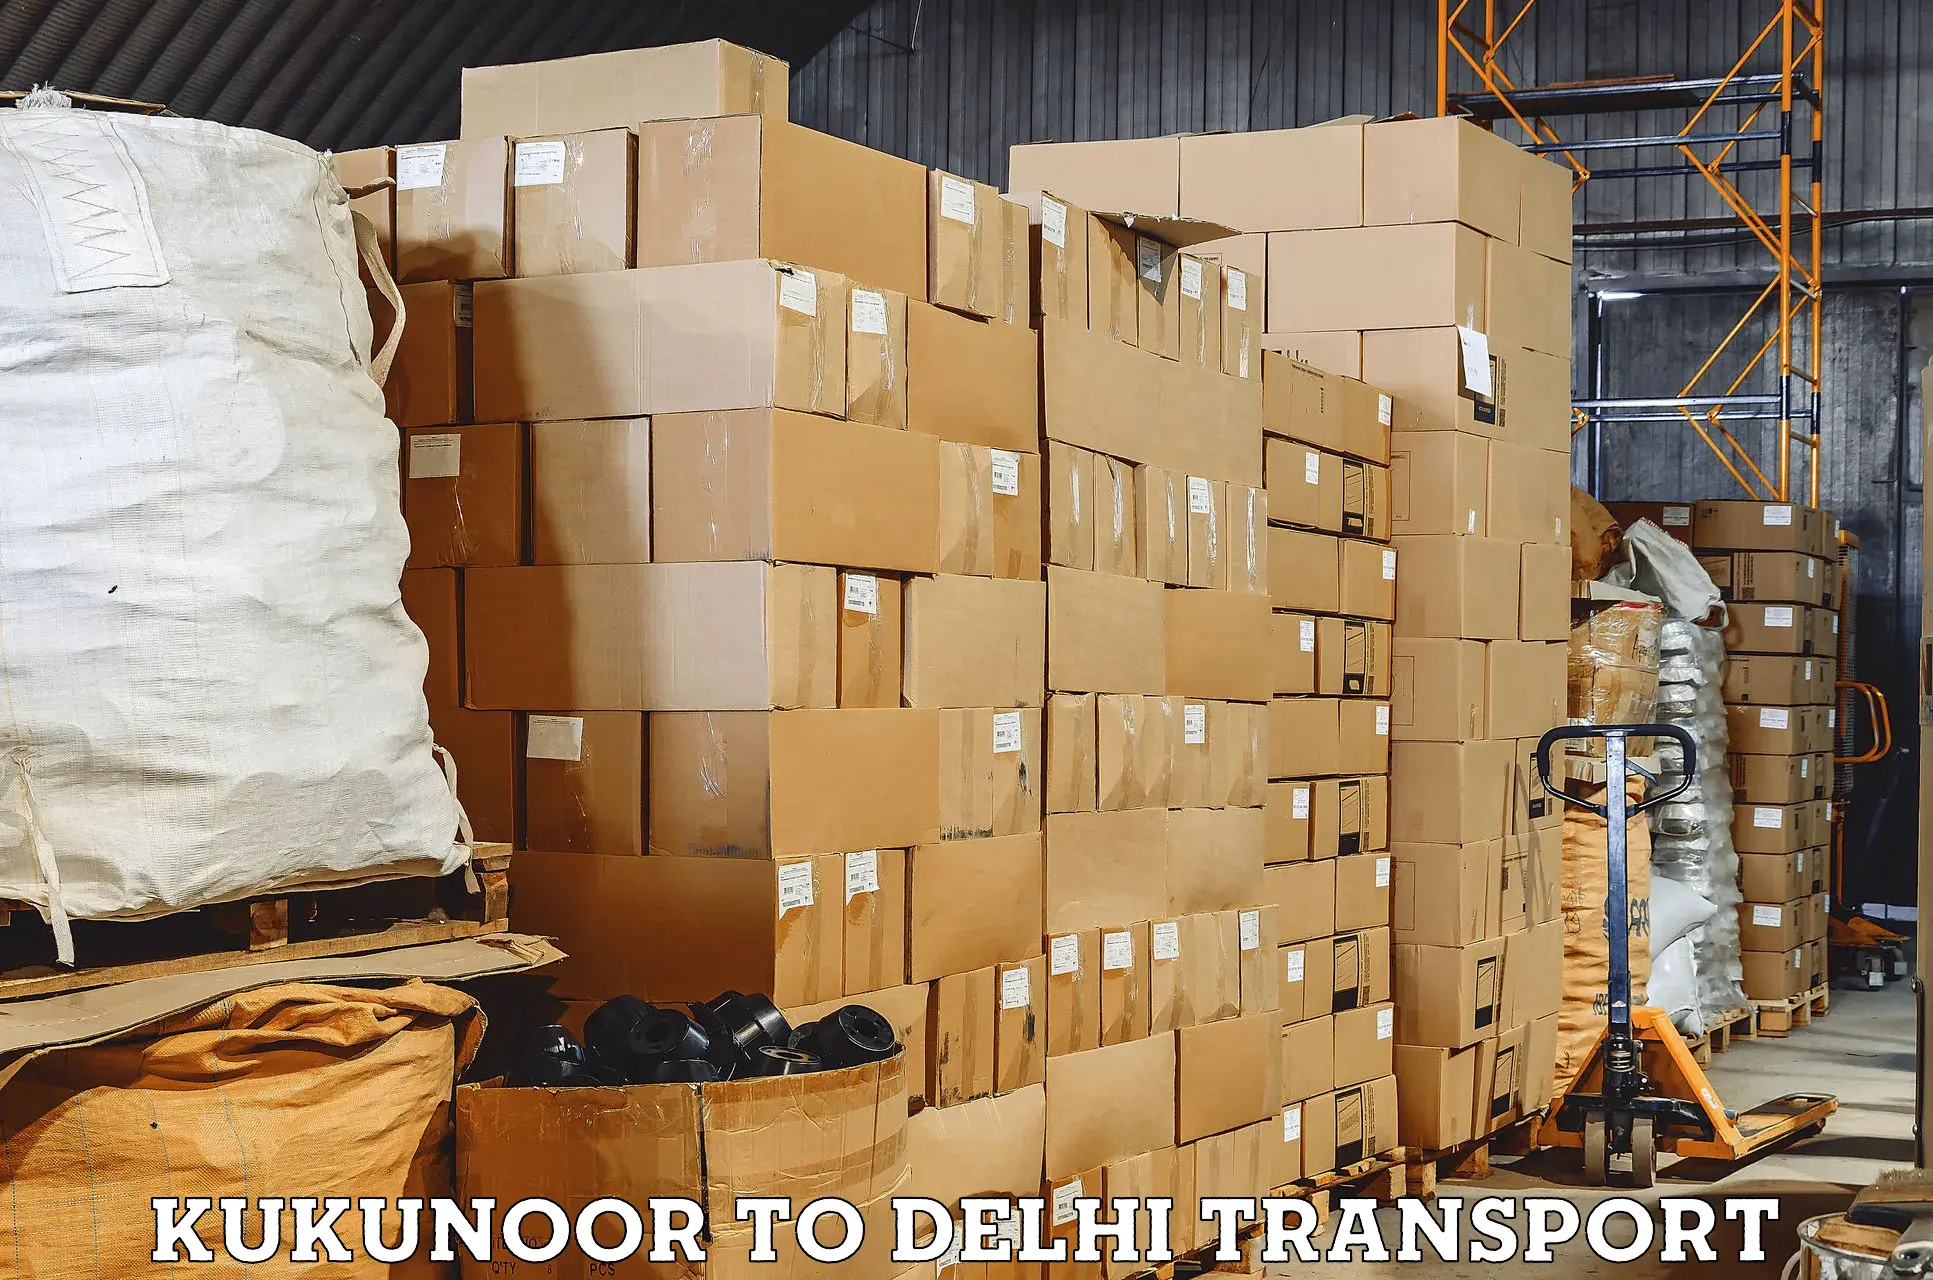 Daily transport service in Kukunoor to Delhi